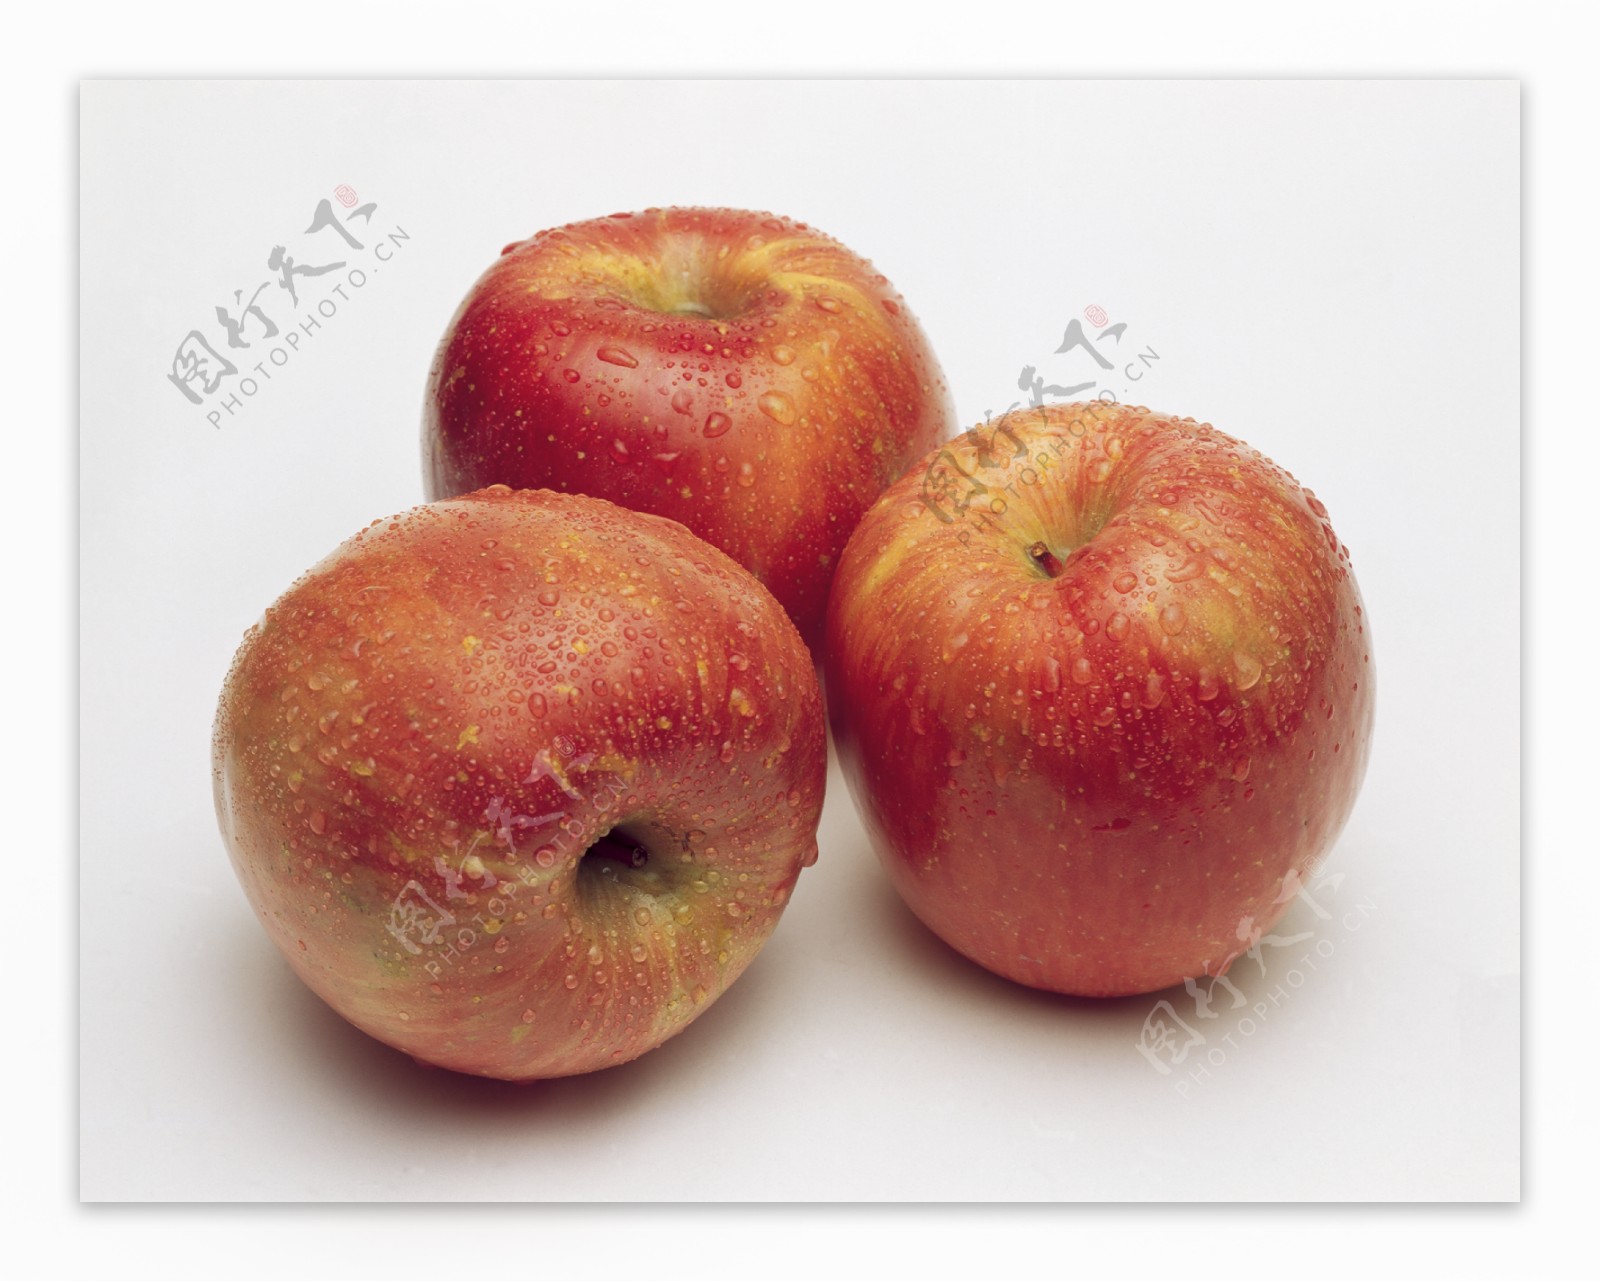 三只苹果落地的苹果关于苹果的思考